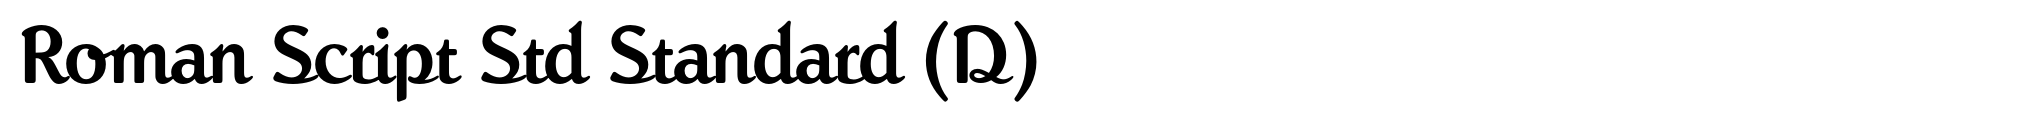 Roman Script Std Standard (D) image